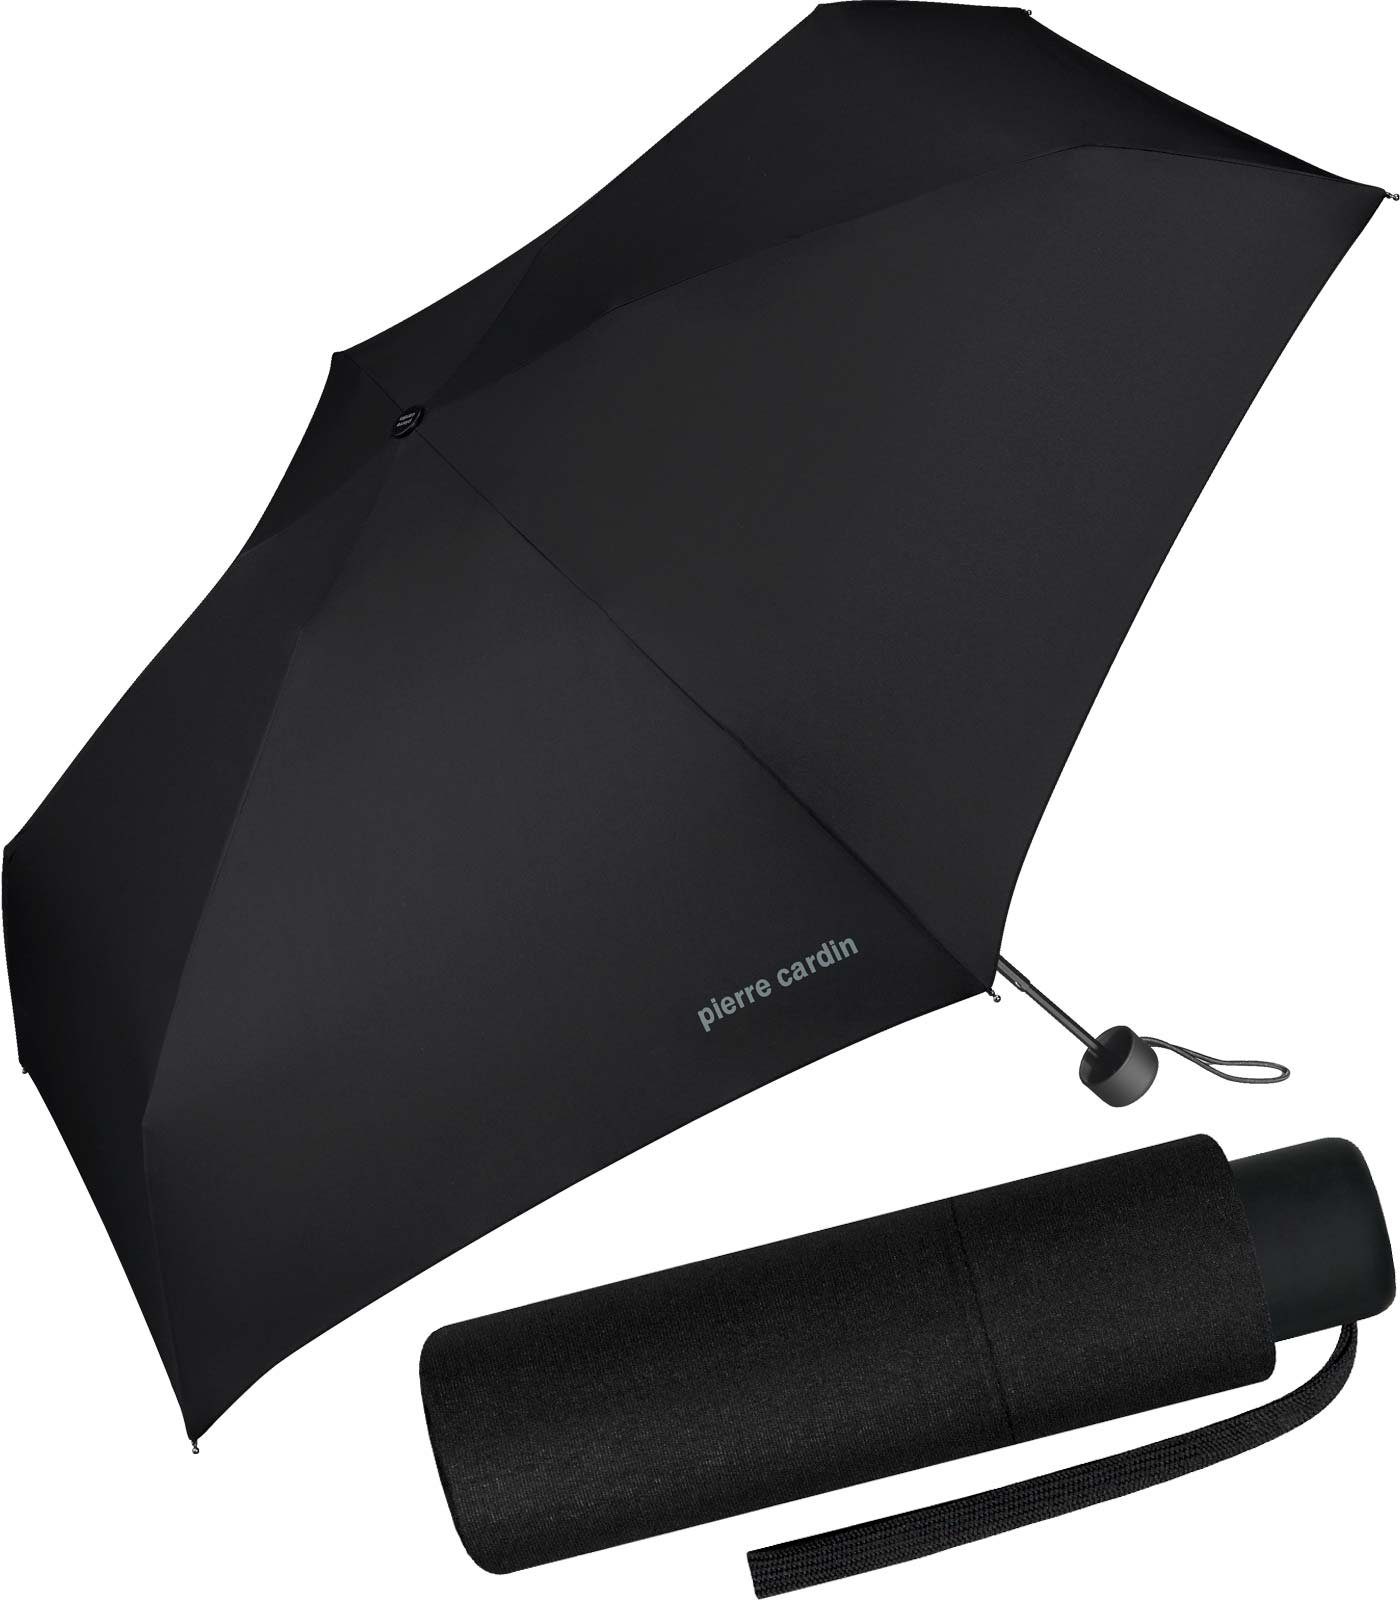 Regenschirm Cardin Tasche jede supermini Petito in leichter Taschenregenschirm Slimline, passt Pierre